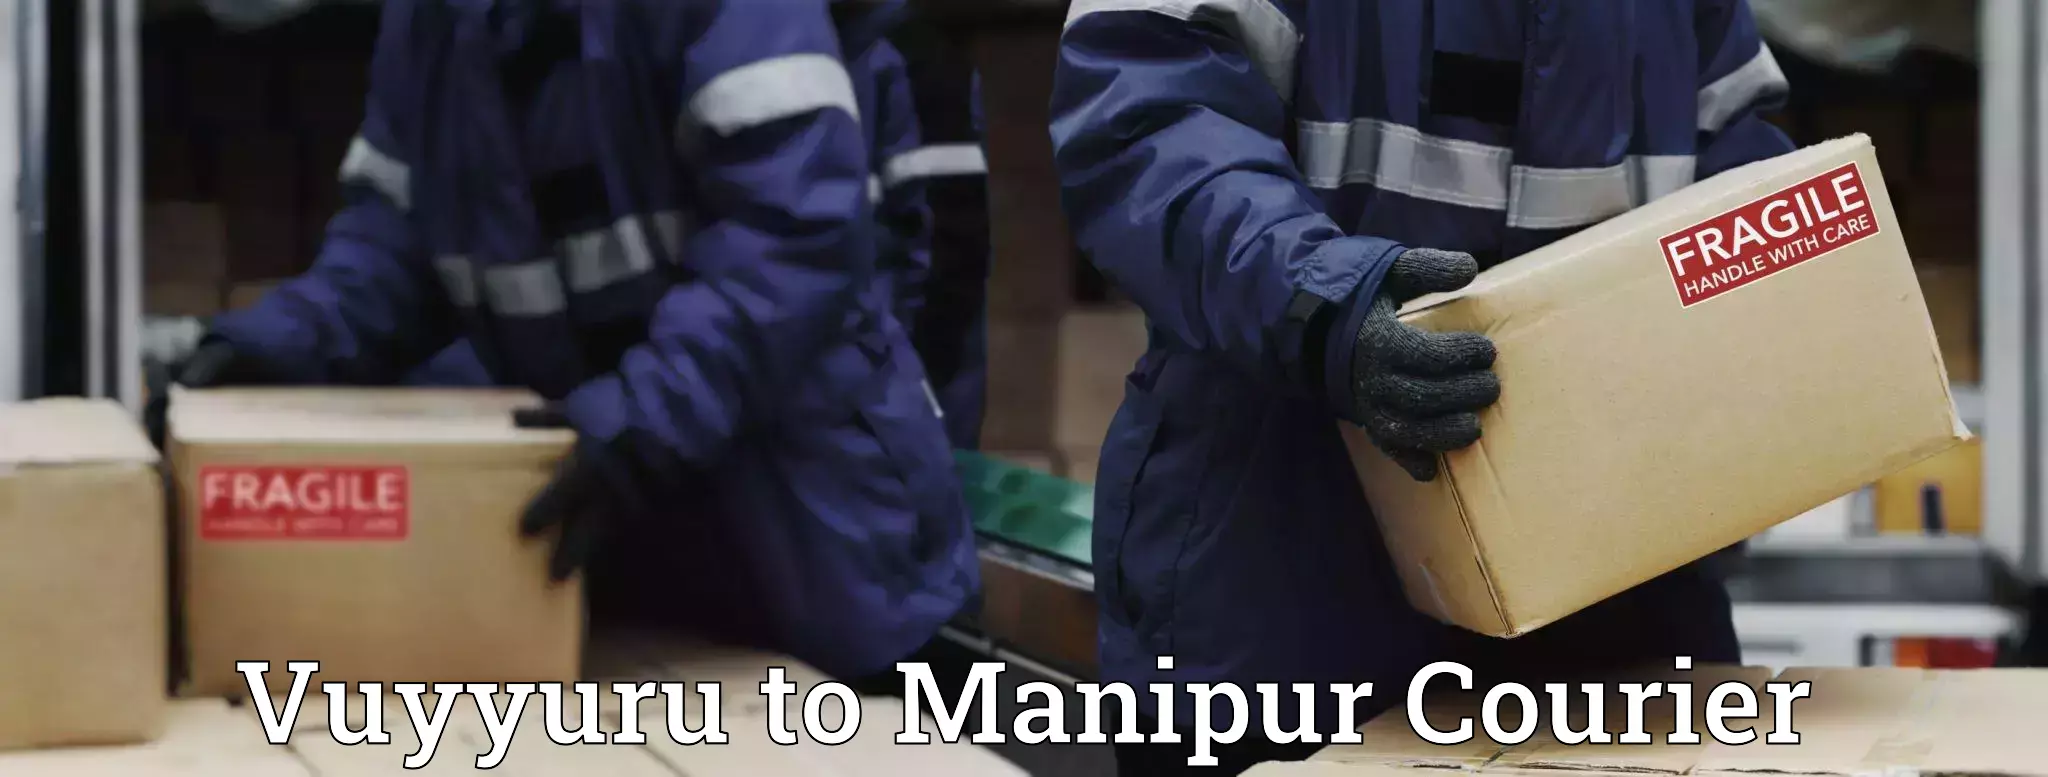 Premium delivery services Vuyyuru to Manipur